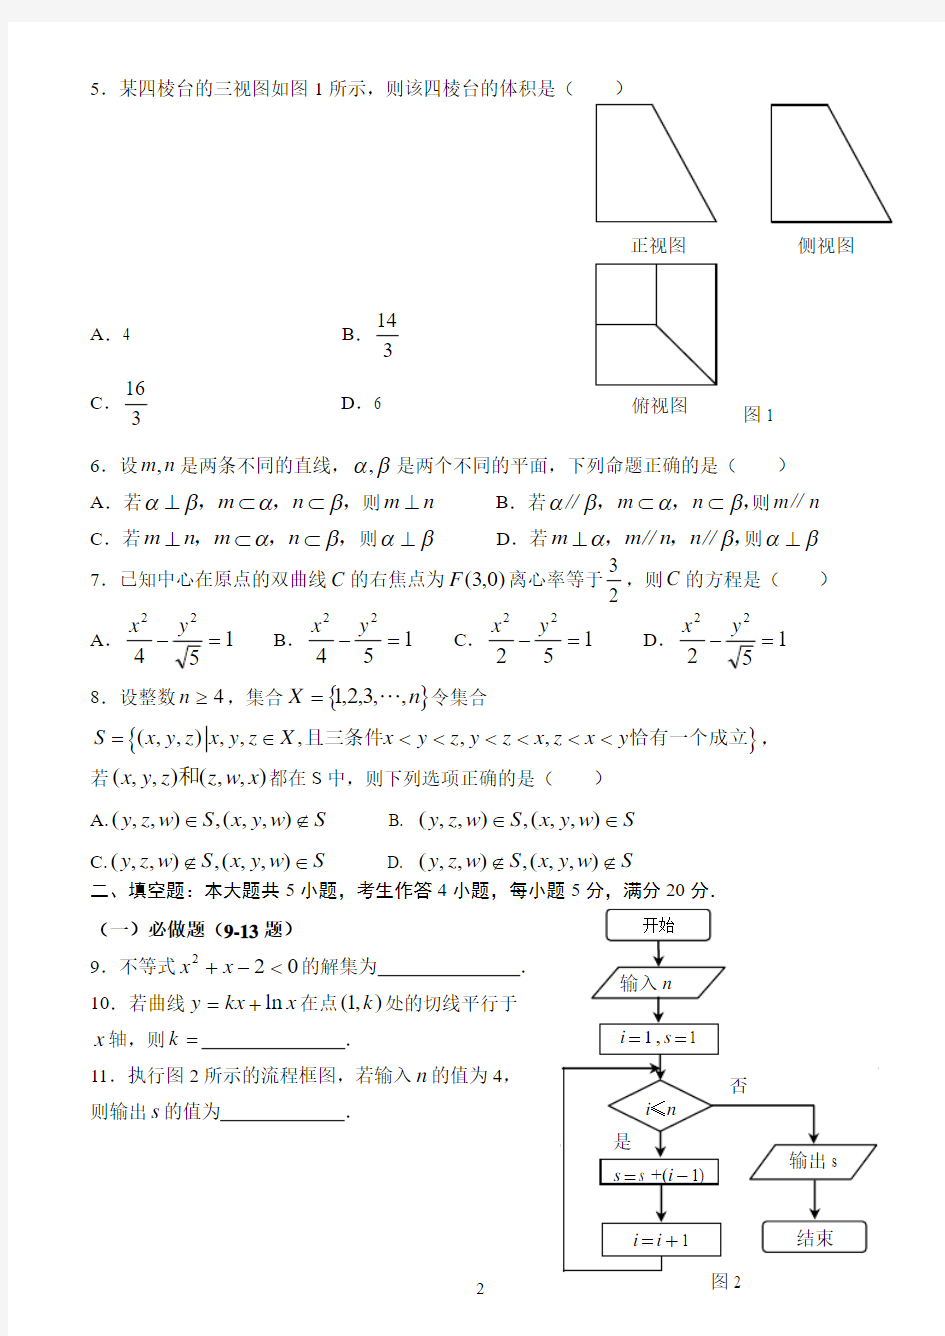 2013年广东高考理科数学试题及答案(word版)